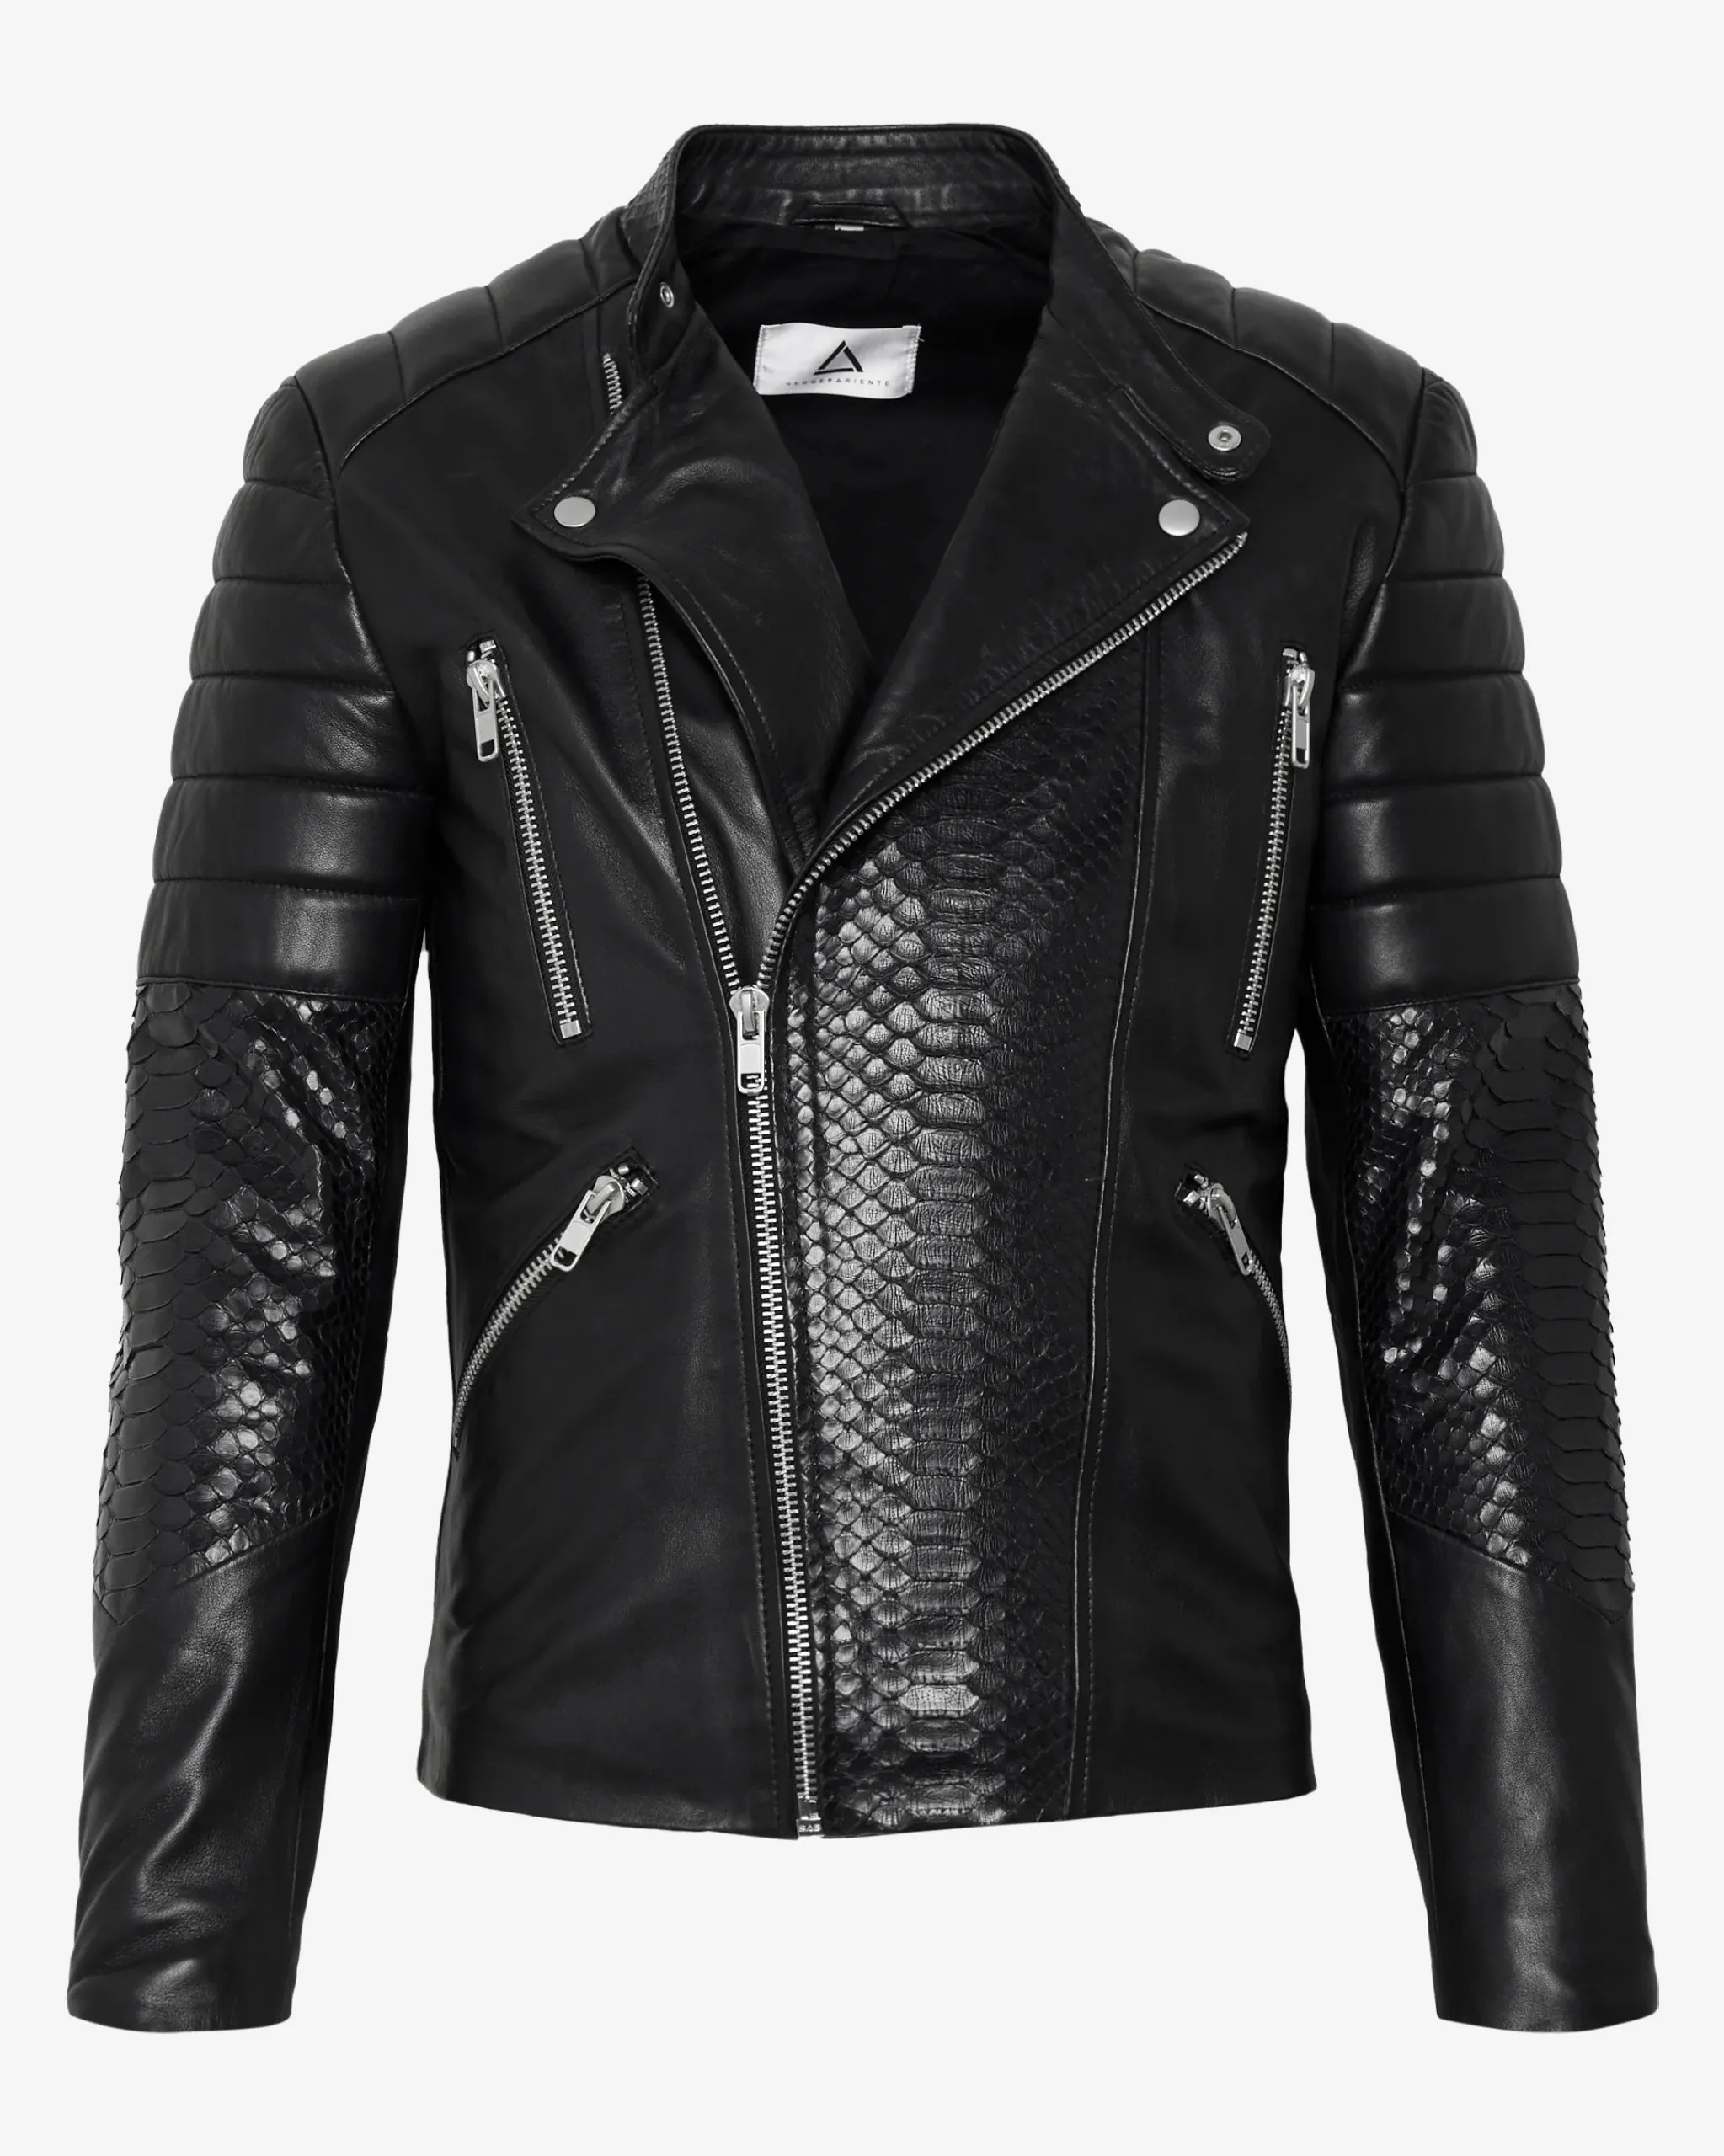 black-biker-leather-jacket-100-genuine-lambskin (1)